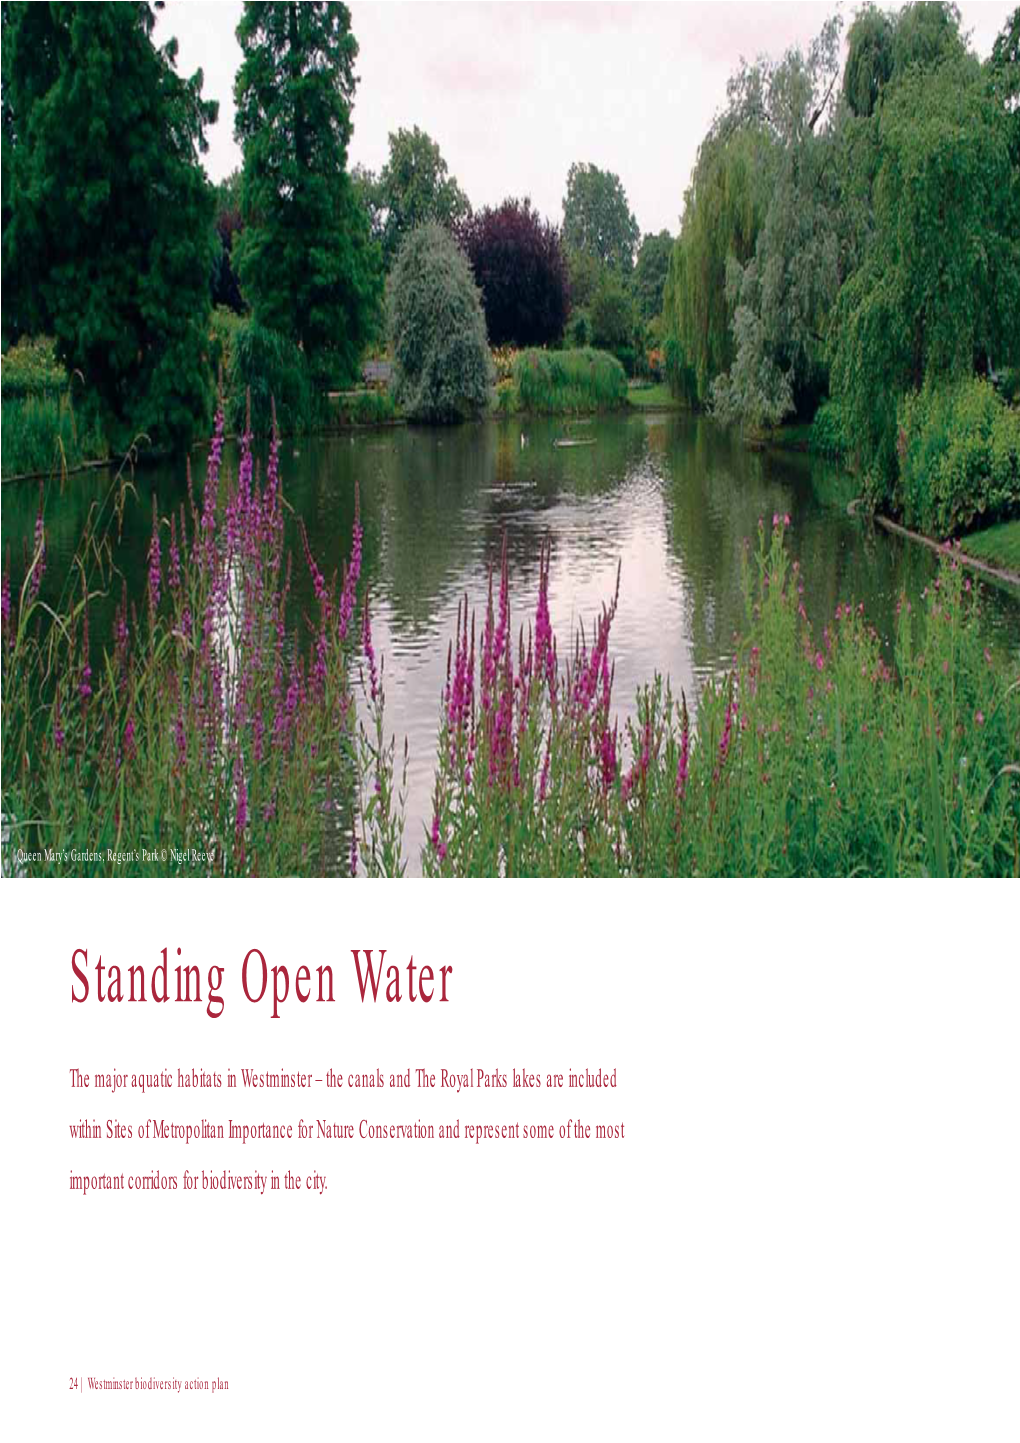 Standing Open Water